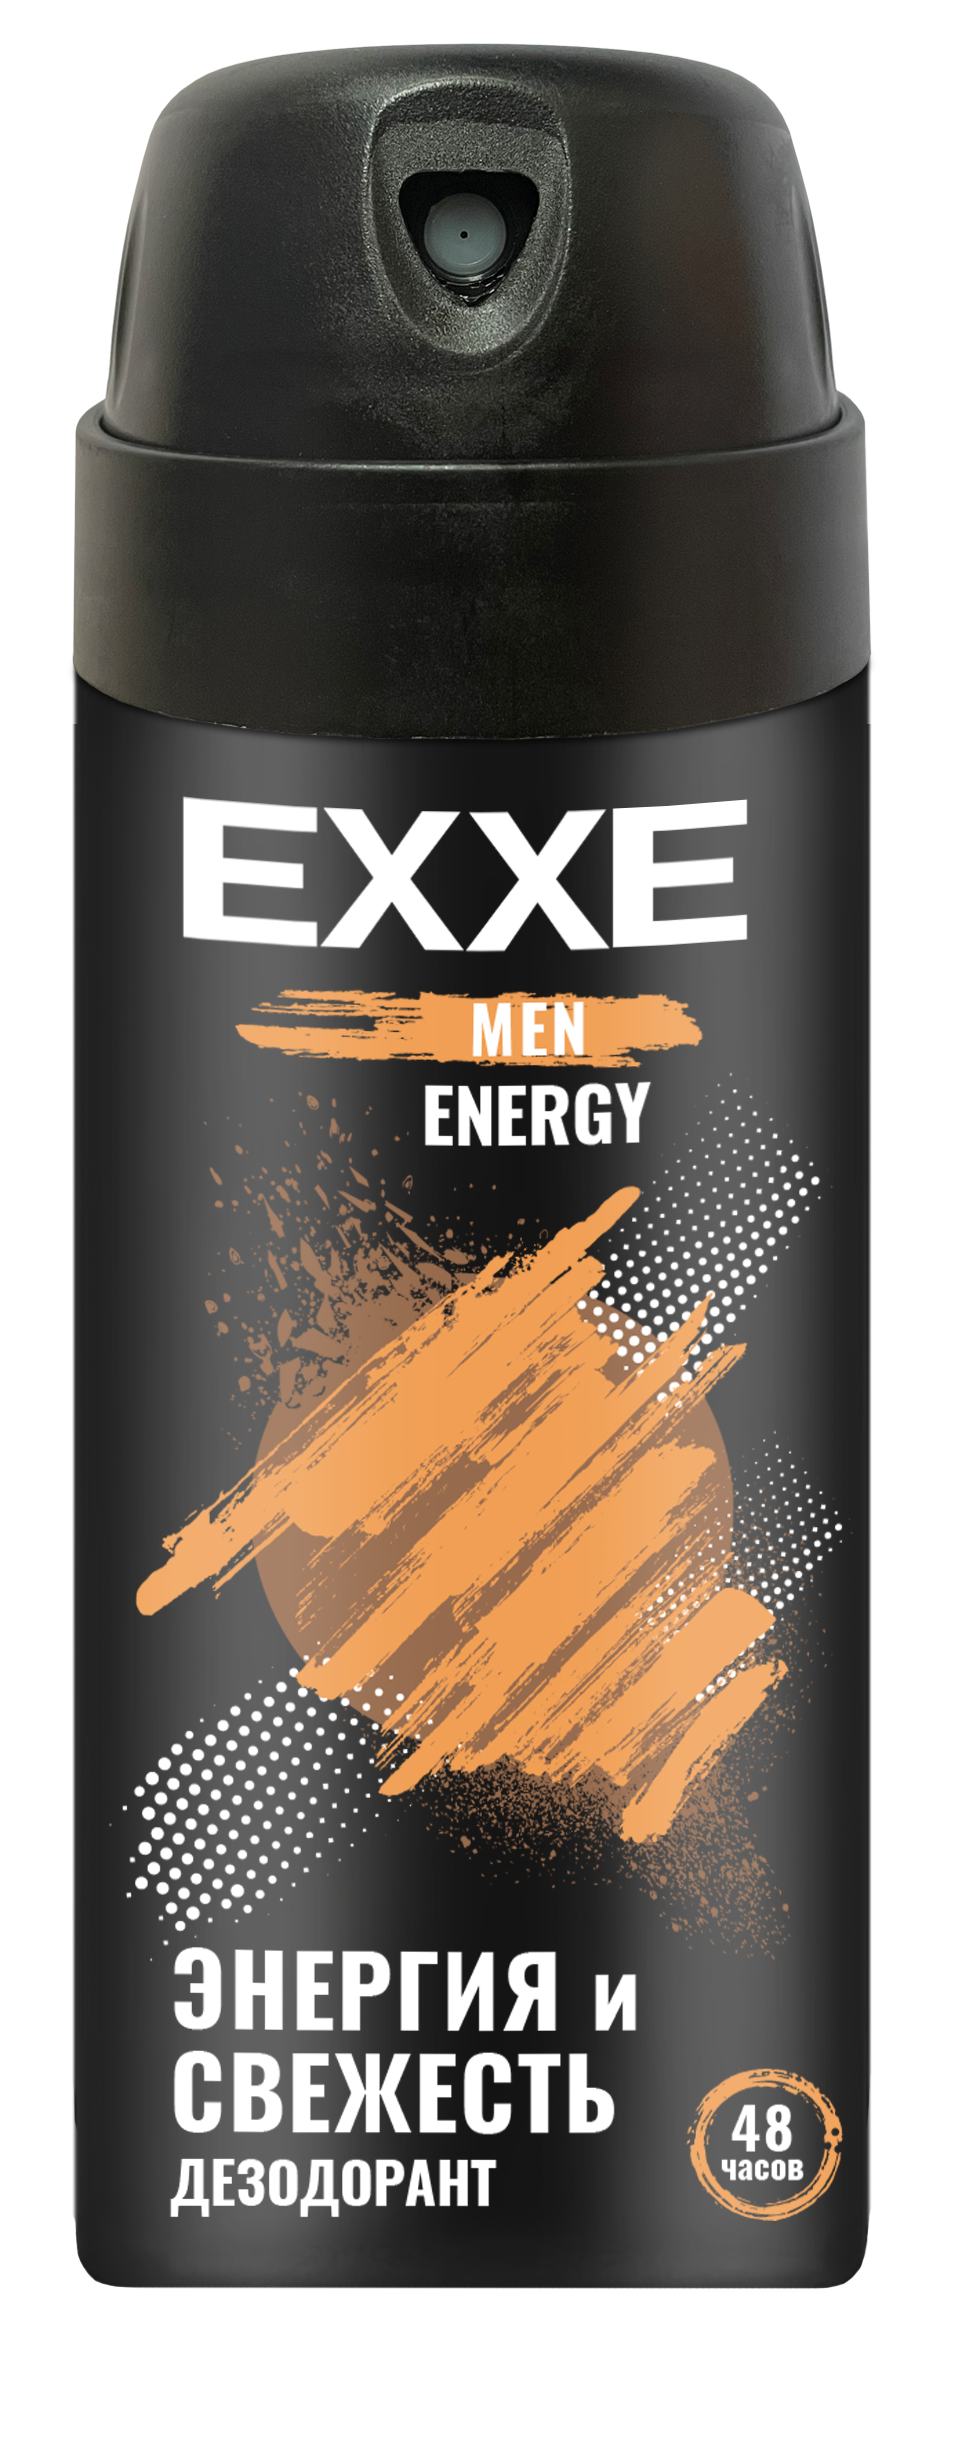 Мужской дезодорант EXXE MEN ENERGY, аэрозоль, 150 мл аэрозоль дезодорант fa мужской ритмы бразилии 48 ч ночи ипанемы 150 мл